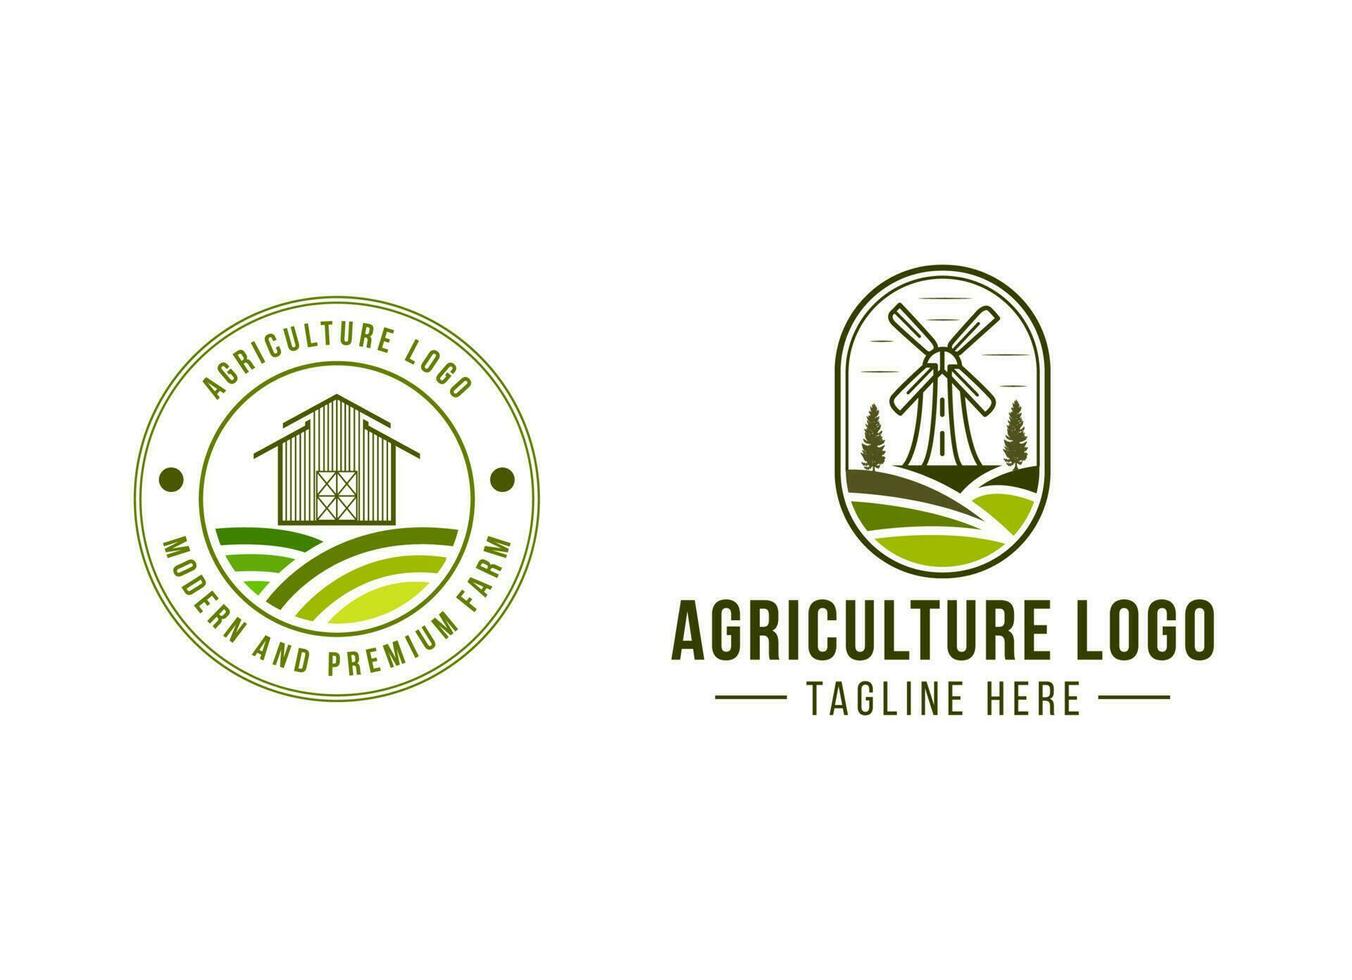 Logo-Design-Vorlage für die Landwirtschaft. vektor